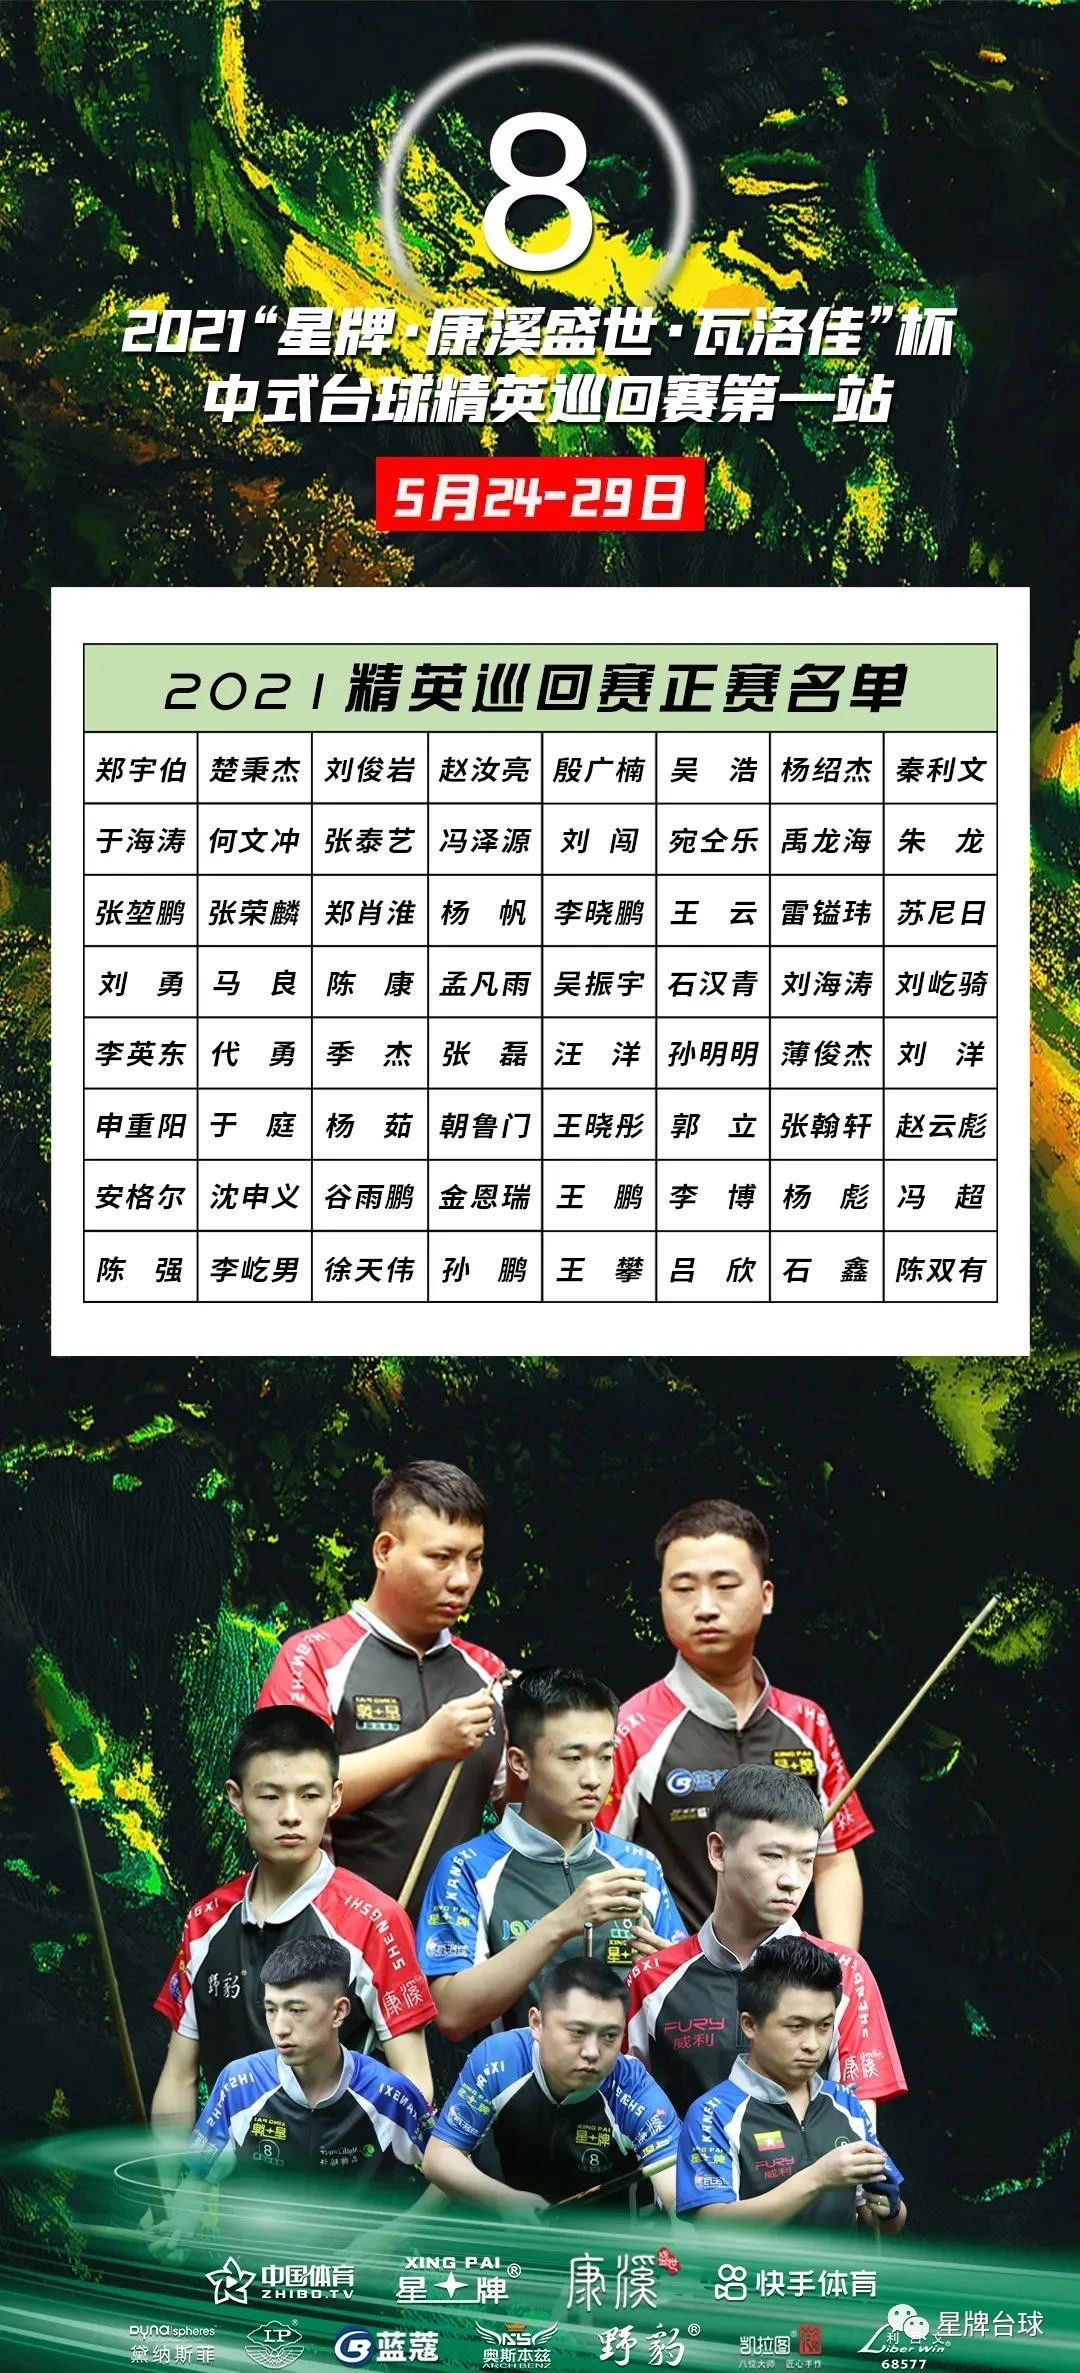 2021“星牌·康溪盛世·瓦洛佳”杯中式台球精英巡回赛第一站竞赛规程